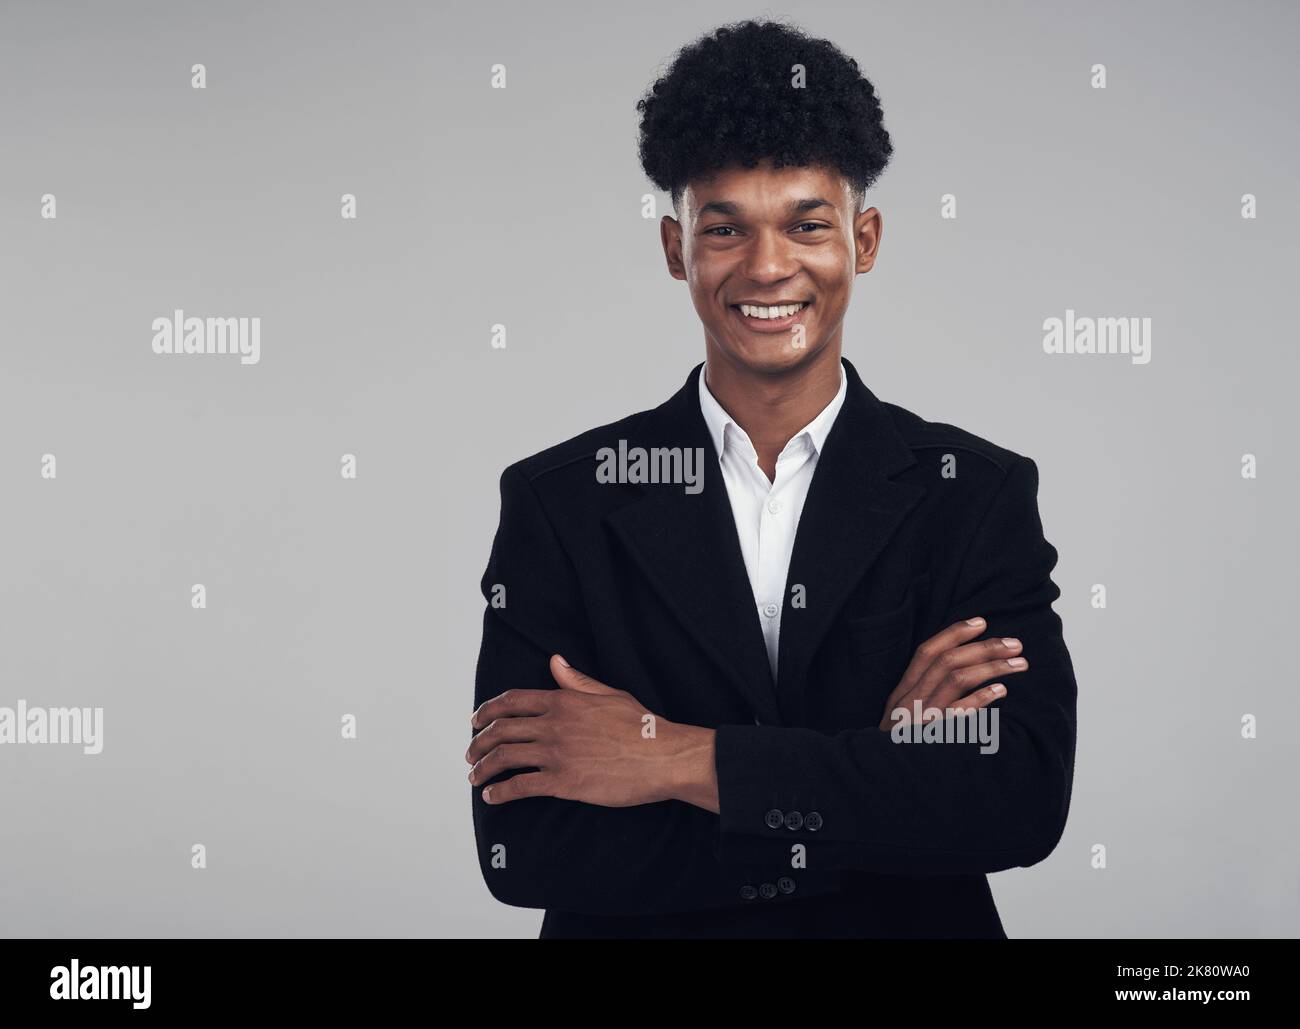 Die perfekte Pose für ein professionelles Online-Profilbild. Studioportrait eines selbstbewussten jungen Geschäftsmannes, der vor grauem Hintergrund posiert. Stockfoto